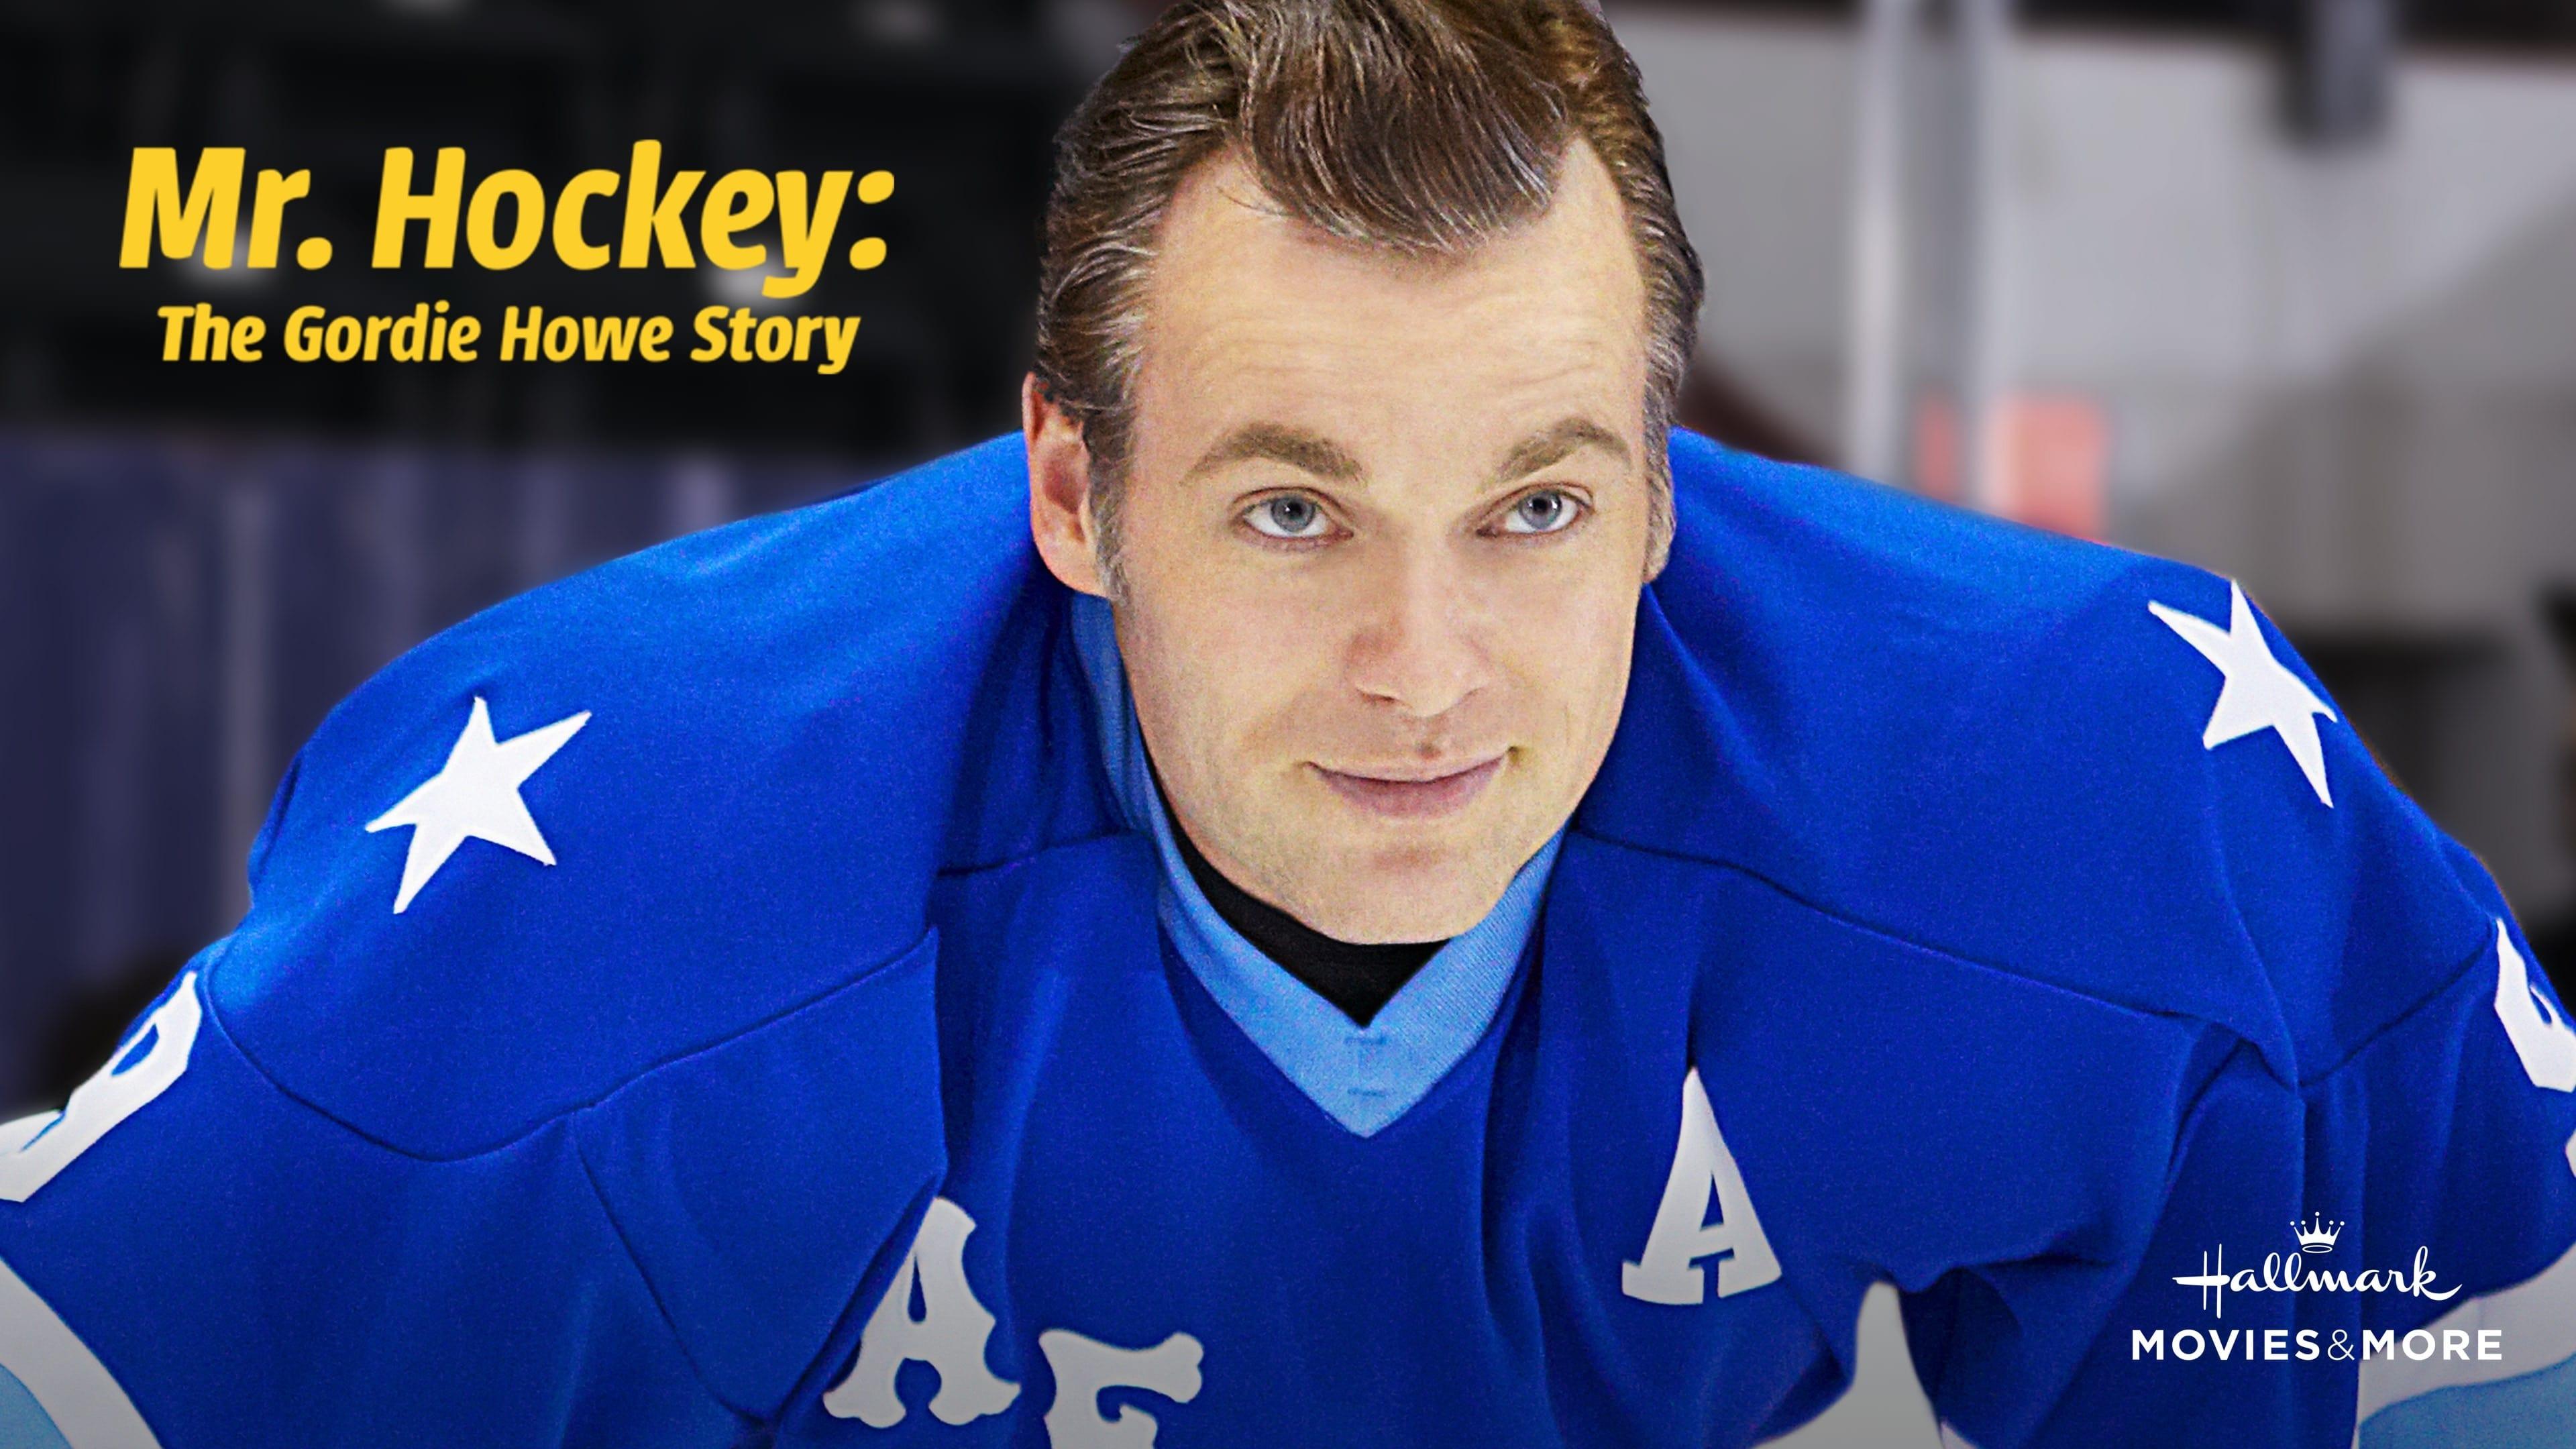 Mr. Hockey: The Gordie Howe Story backdrop